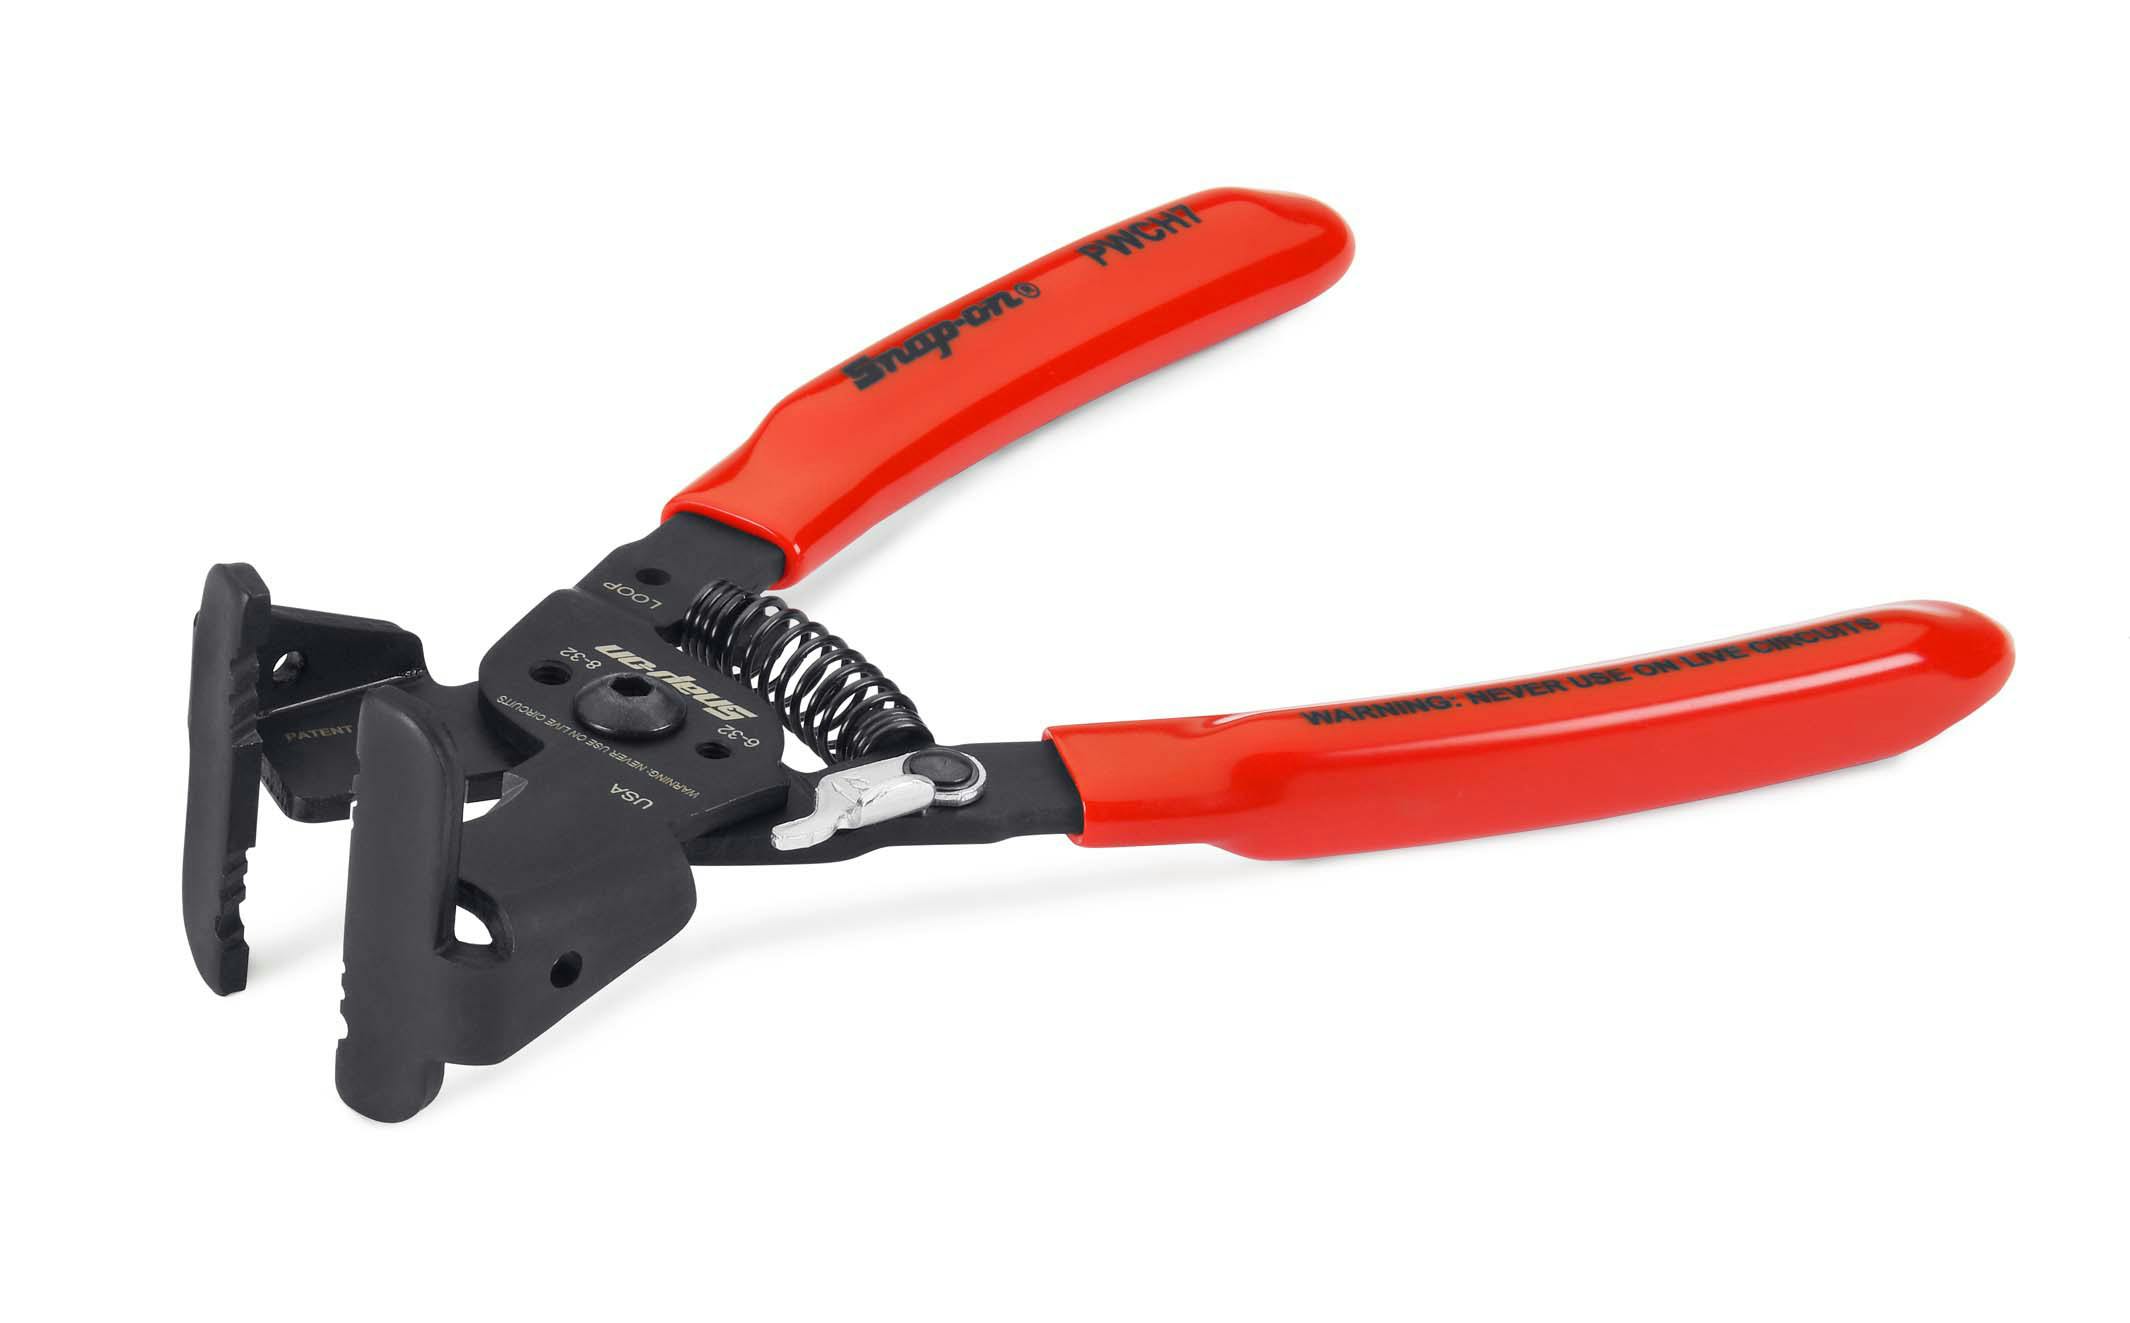 7 In-line Wire Stripper/Cutter (Red), PWCH7